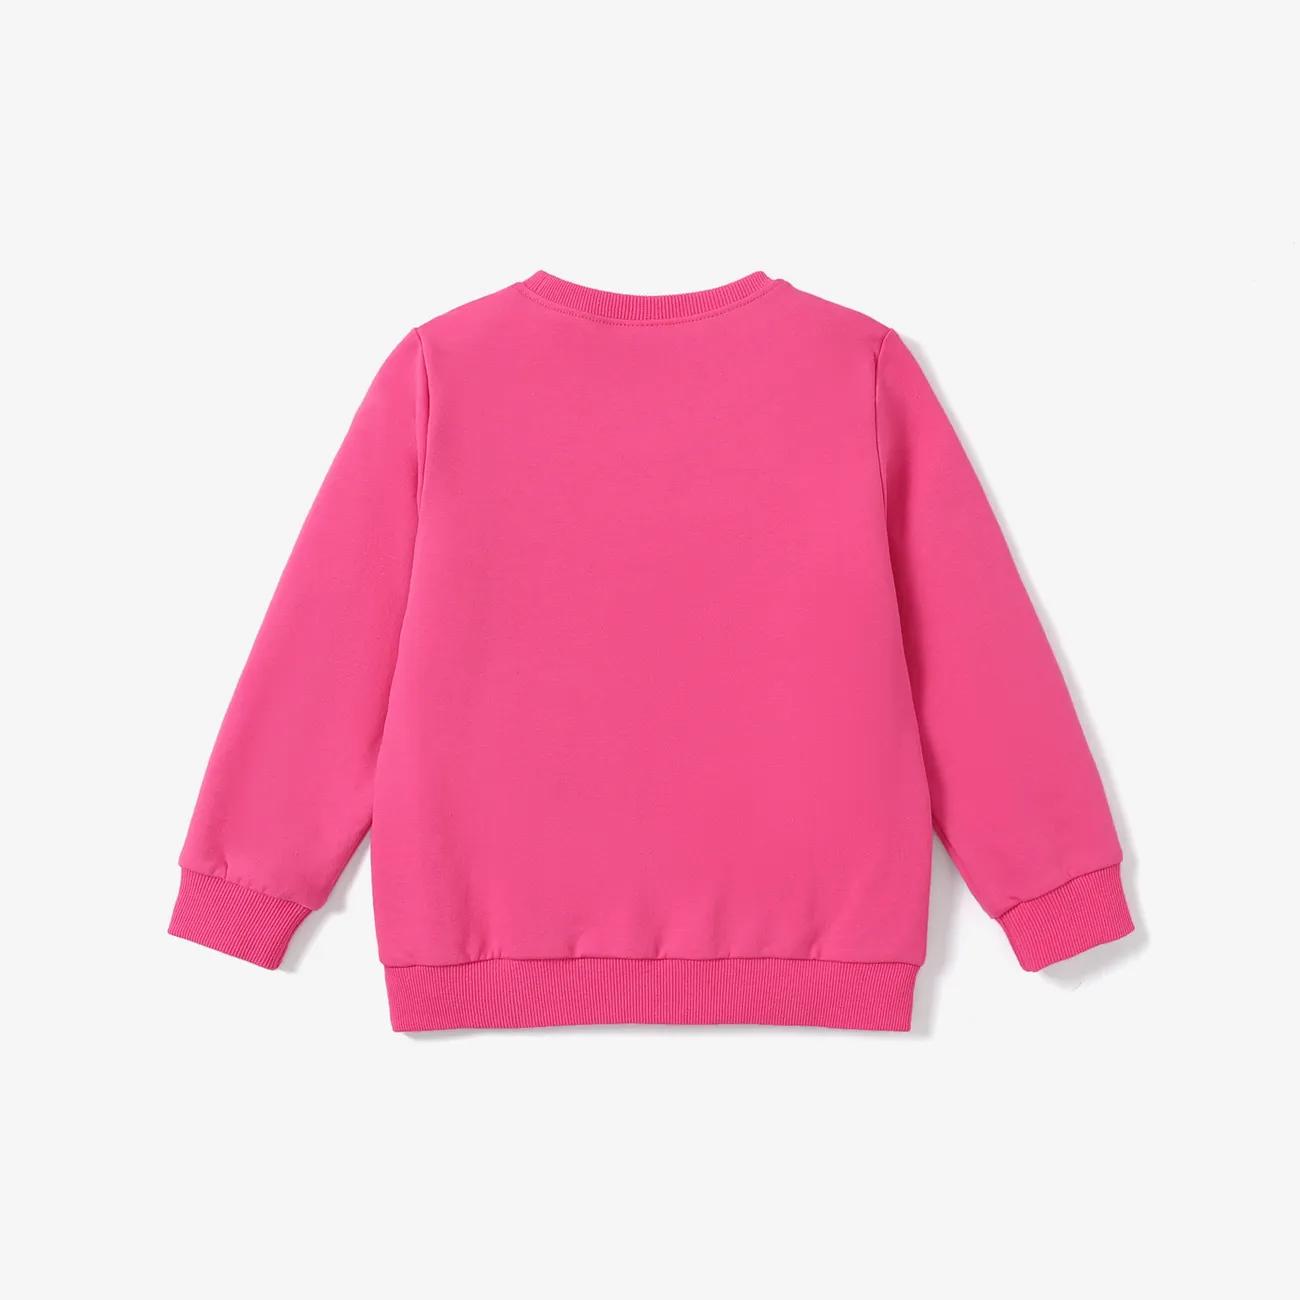 Kinder Mädchen Buchstaben Pullover Sweatshirts Fuchsie big image 1